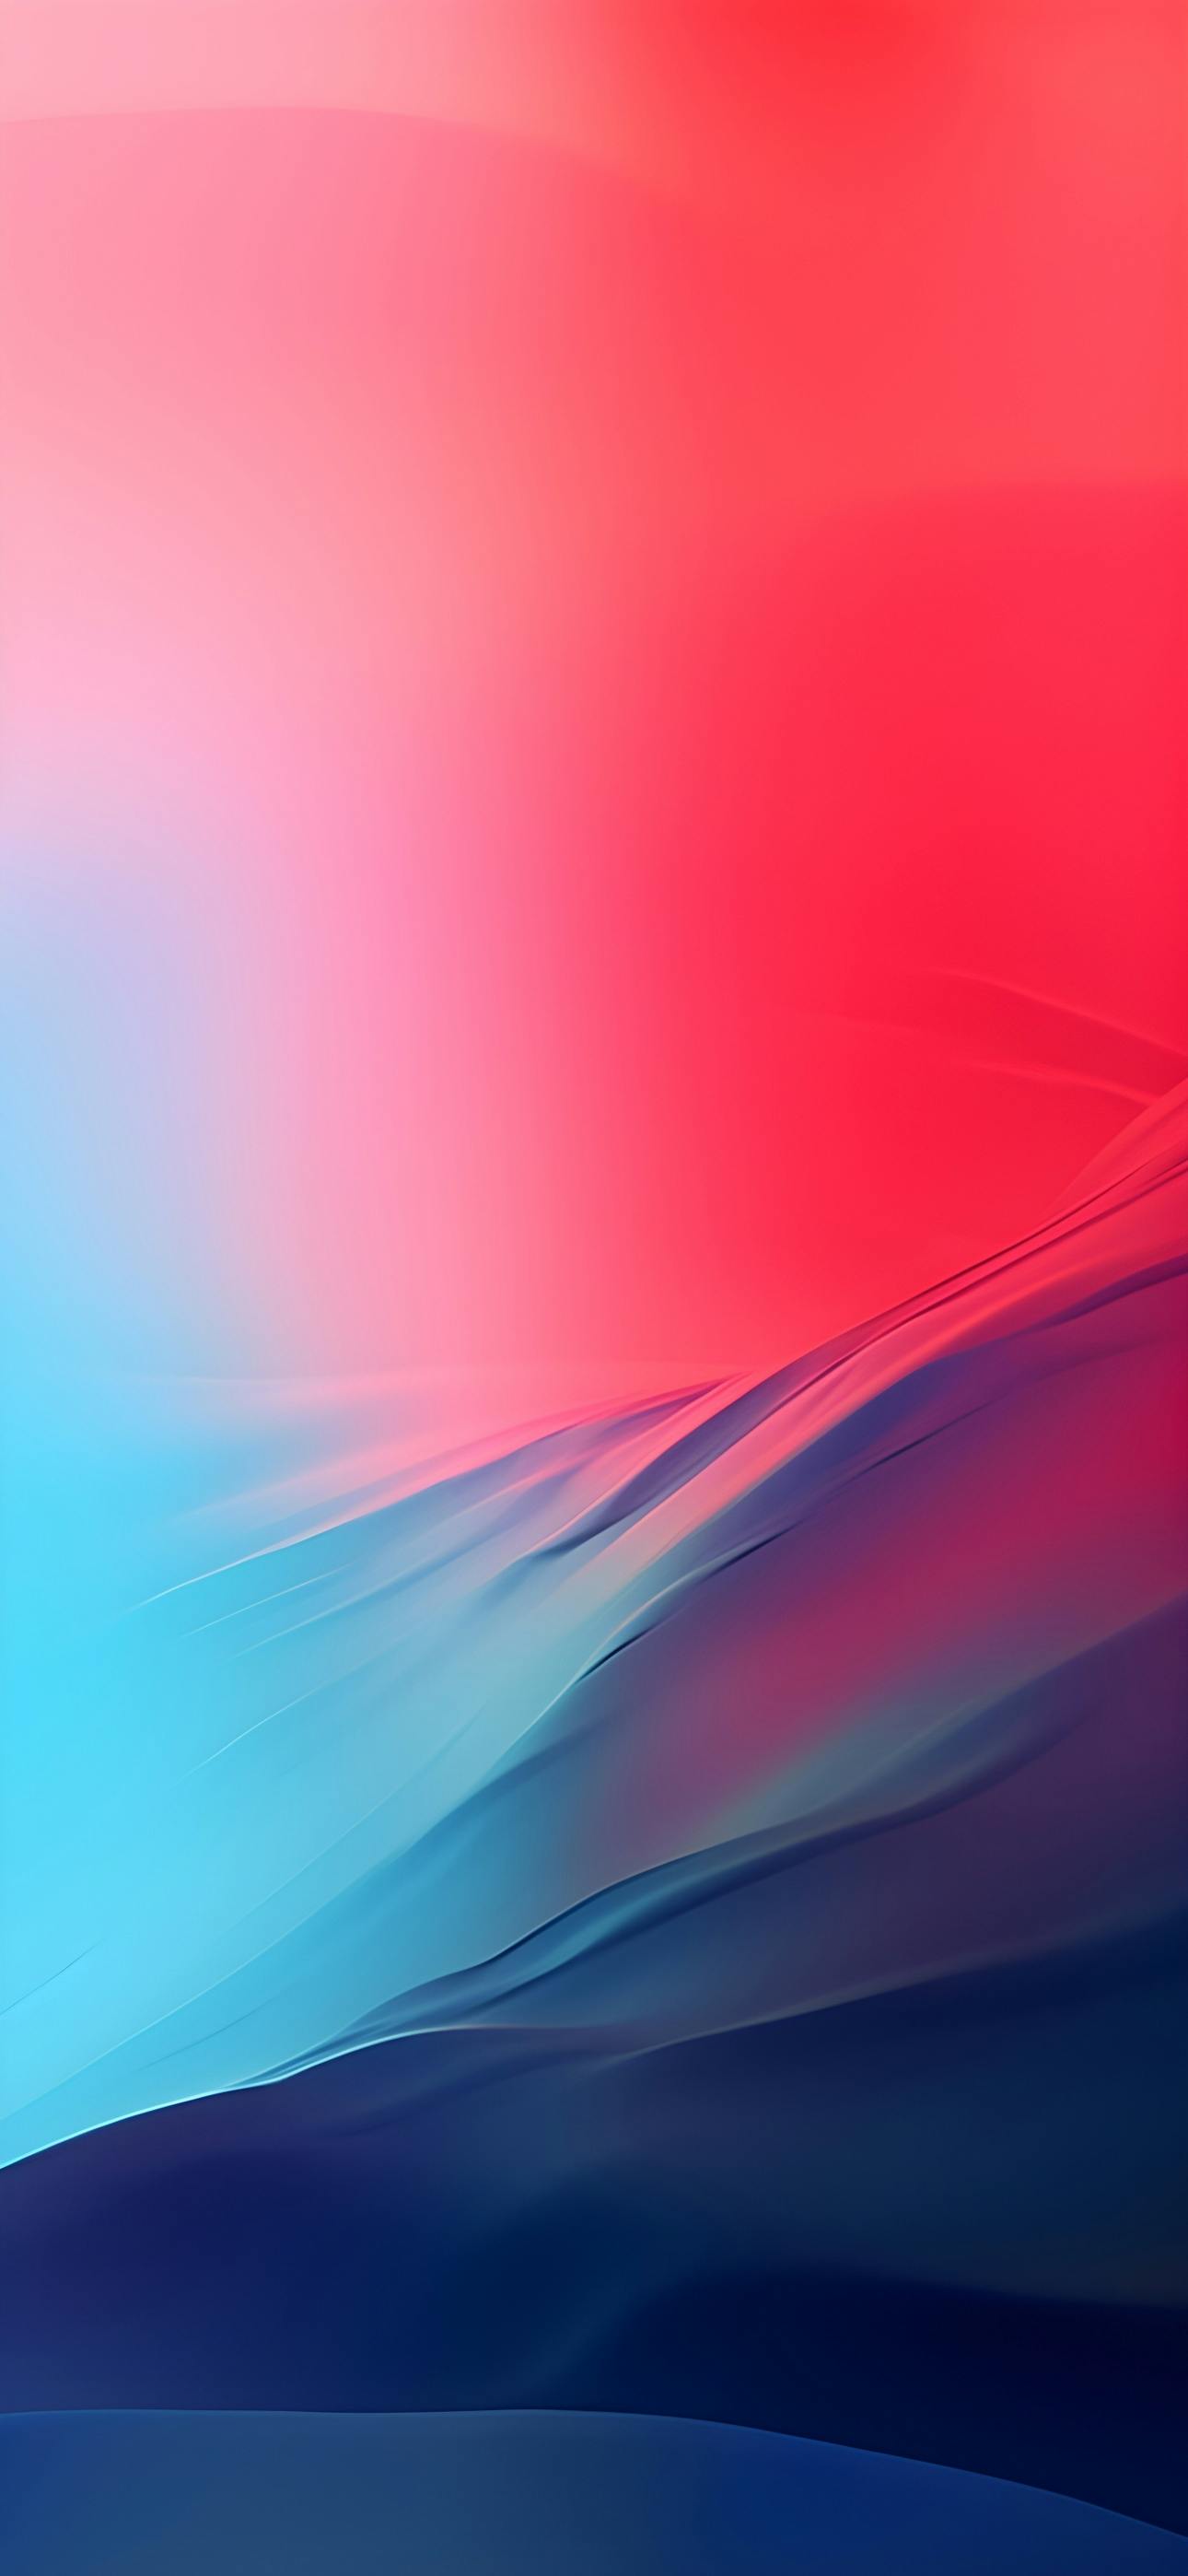 Aqua Bliss gradient wallpaper for iPhone